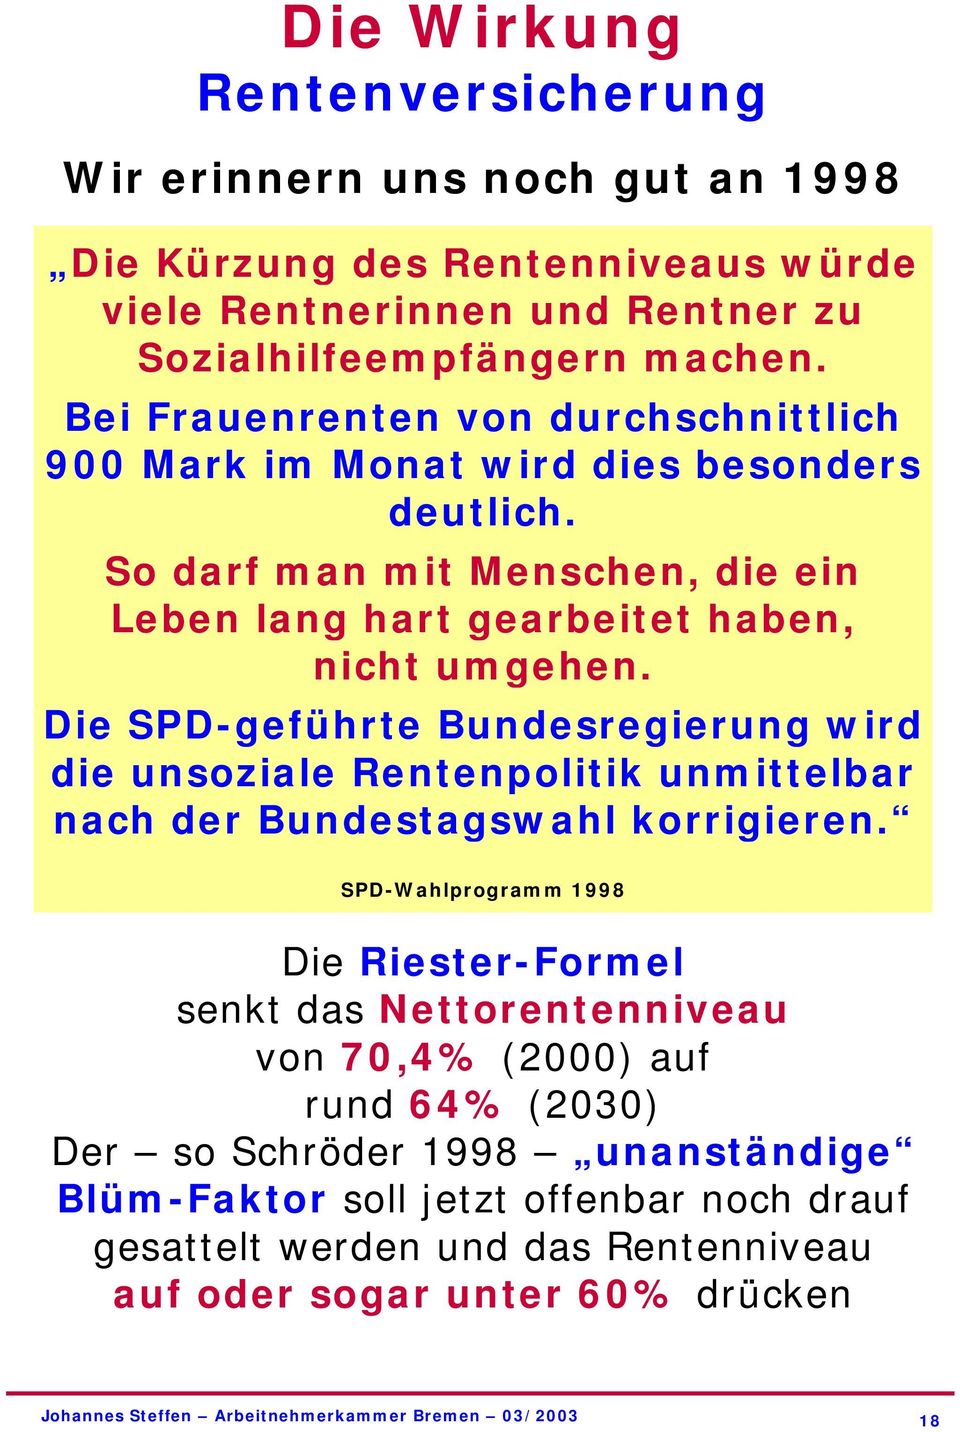 Die SPD-geführte Bundesregierung wird die unsoziale Rentenpolitik unmittelbar nach der Bundestagswahl korrigieren.